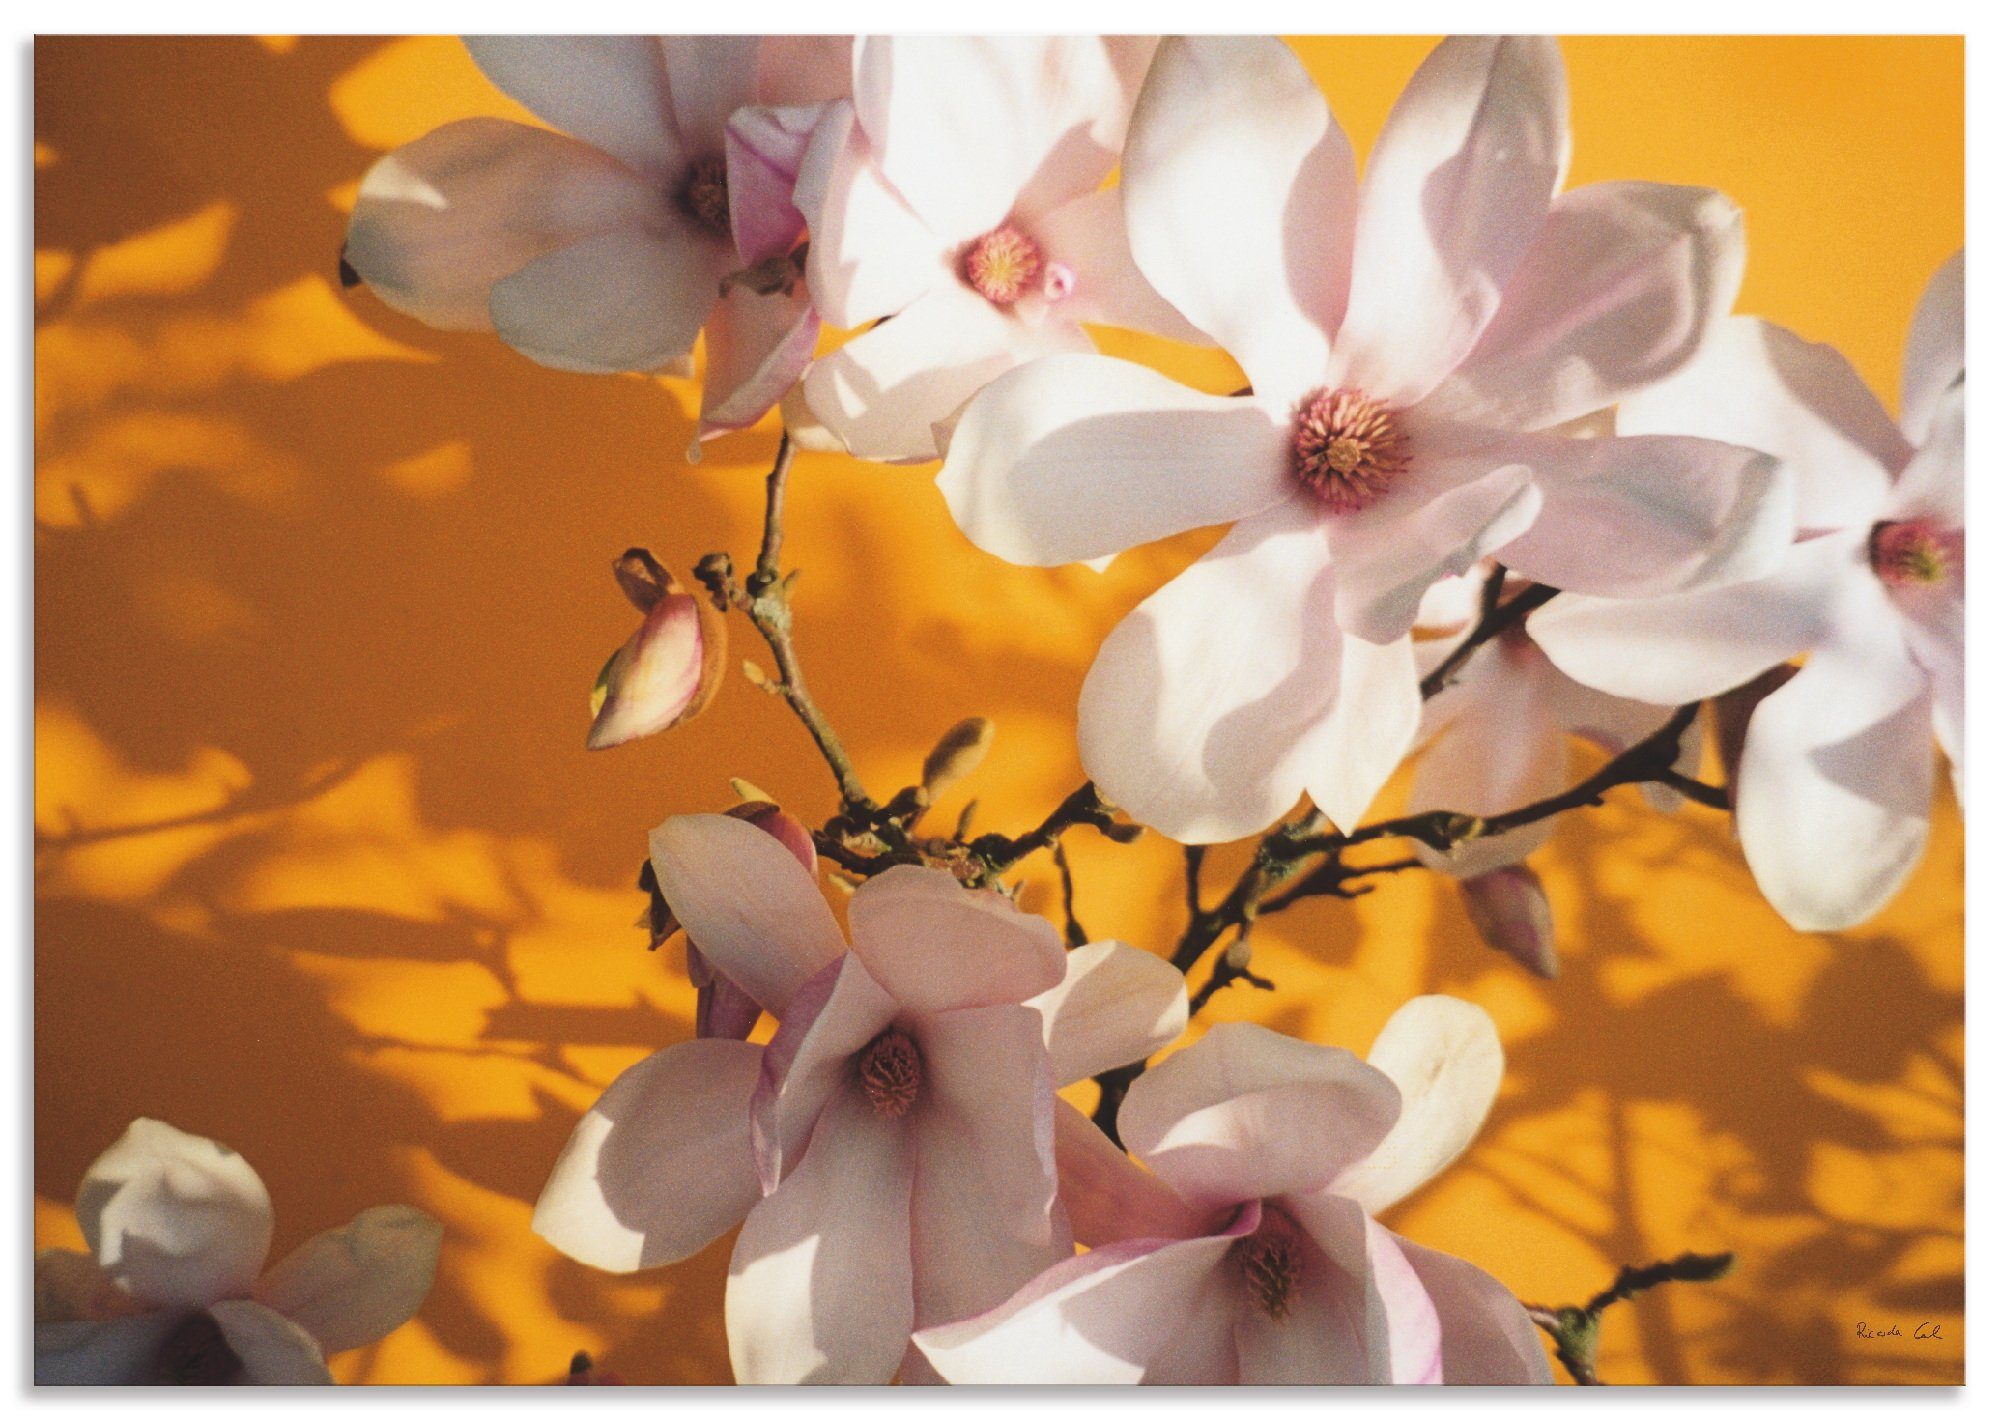 Artland Artprint Fotocollage magnolia in vele afmetingen & productsoorten - artprint van aluminium / artprint voor buiten, artprint op linnen, poster, muursticker / wandfolie ook g